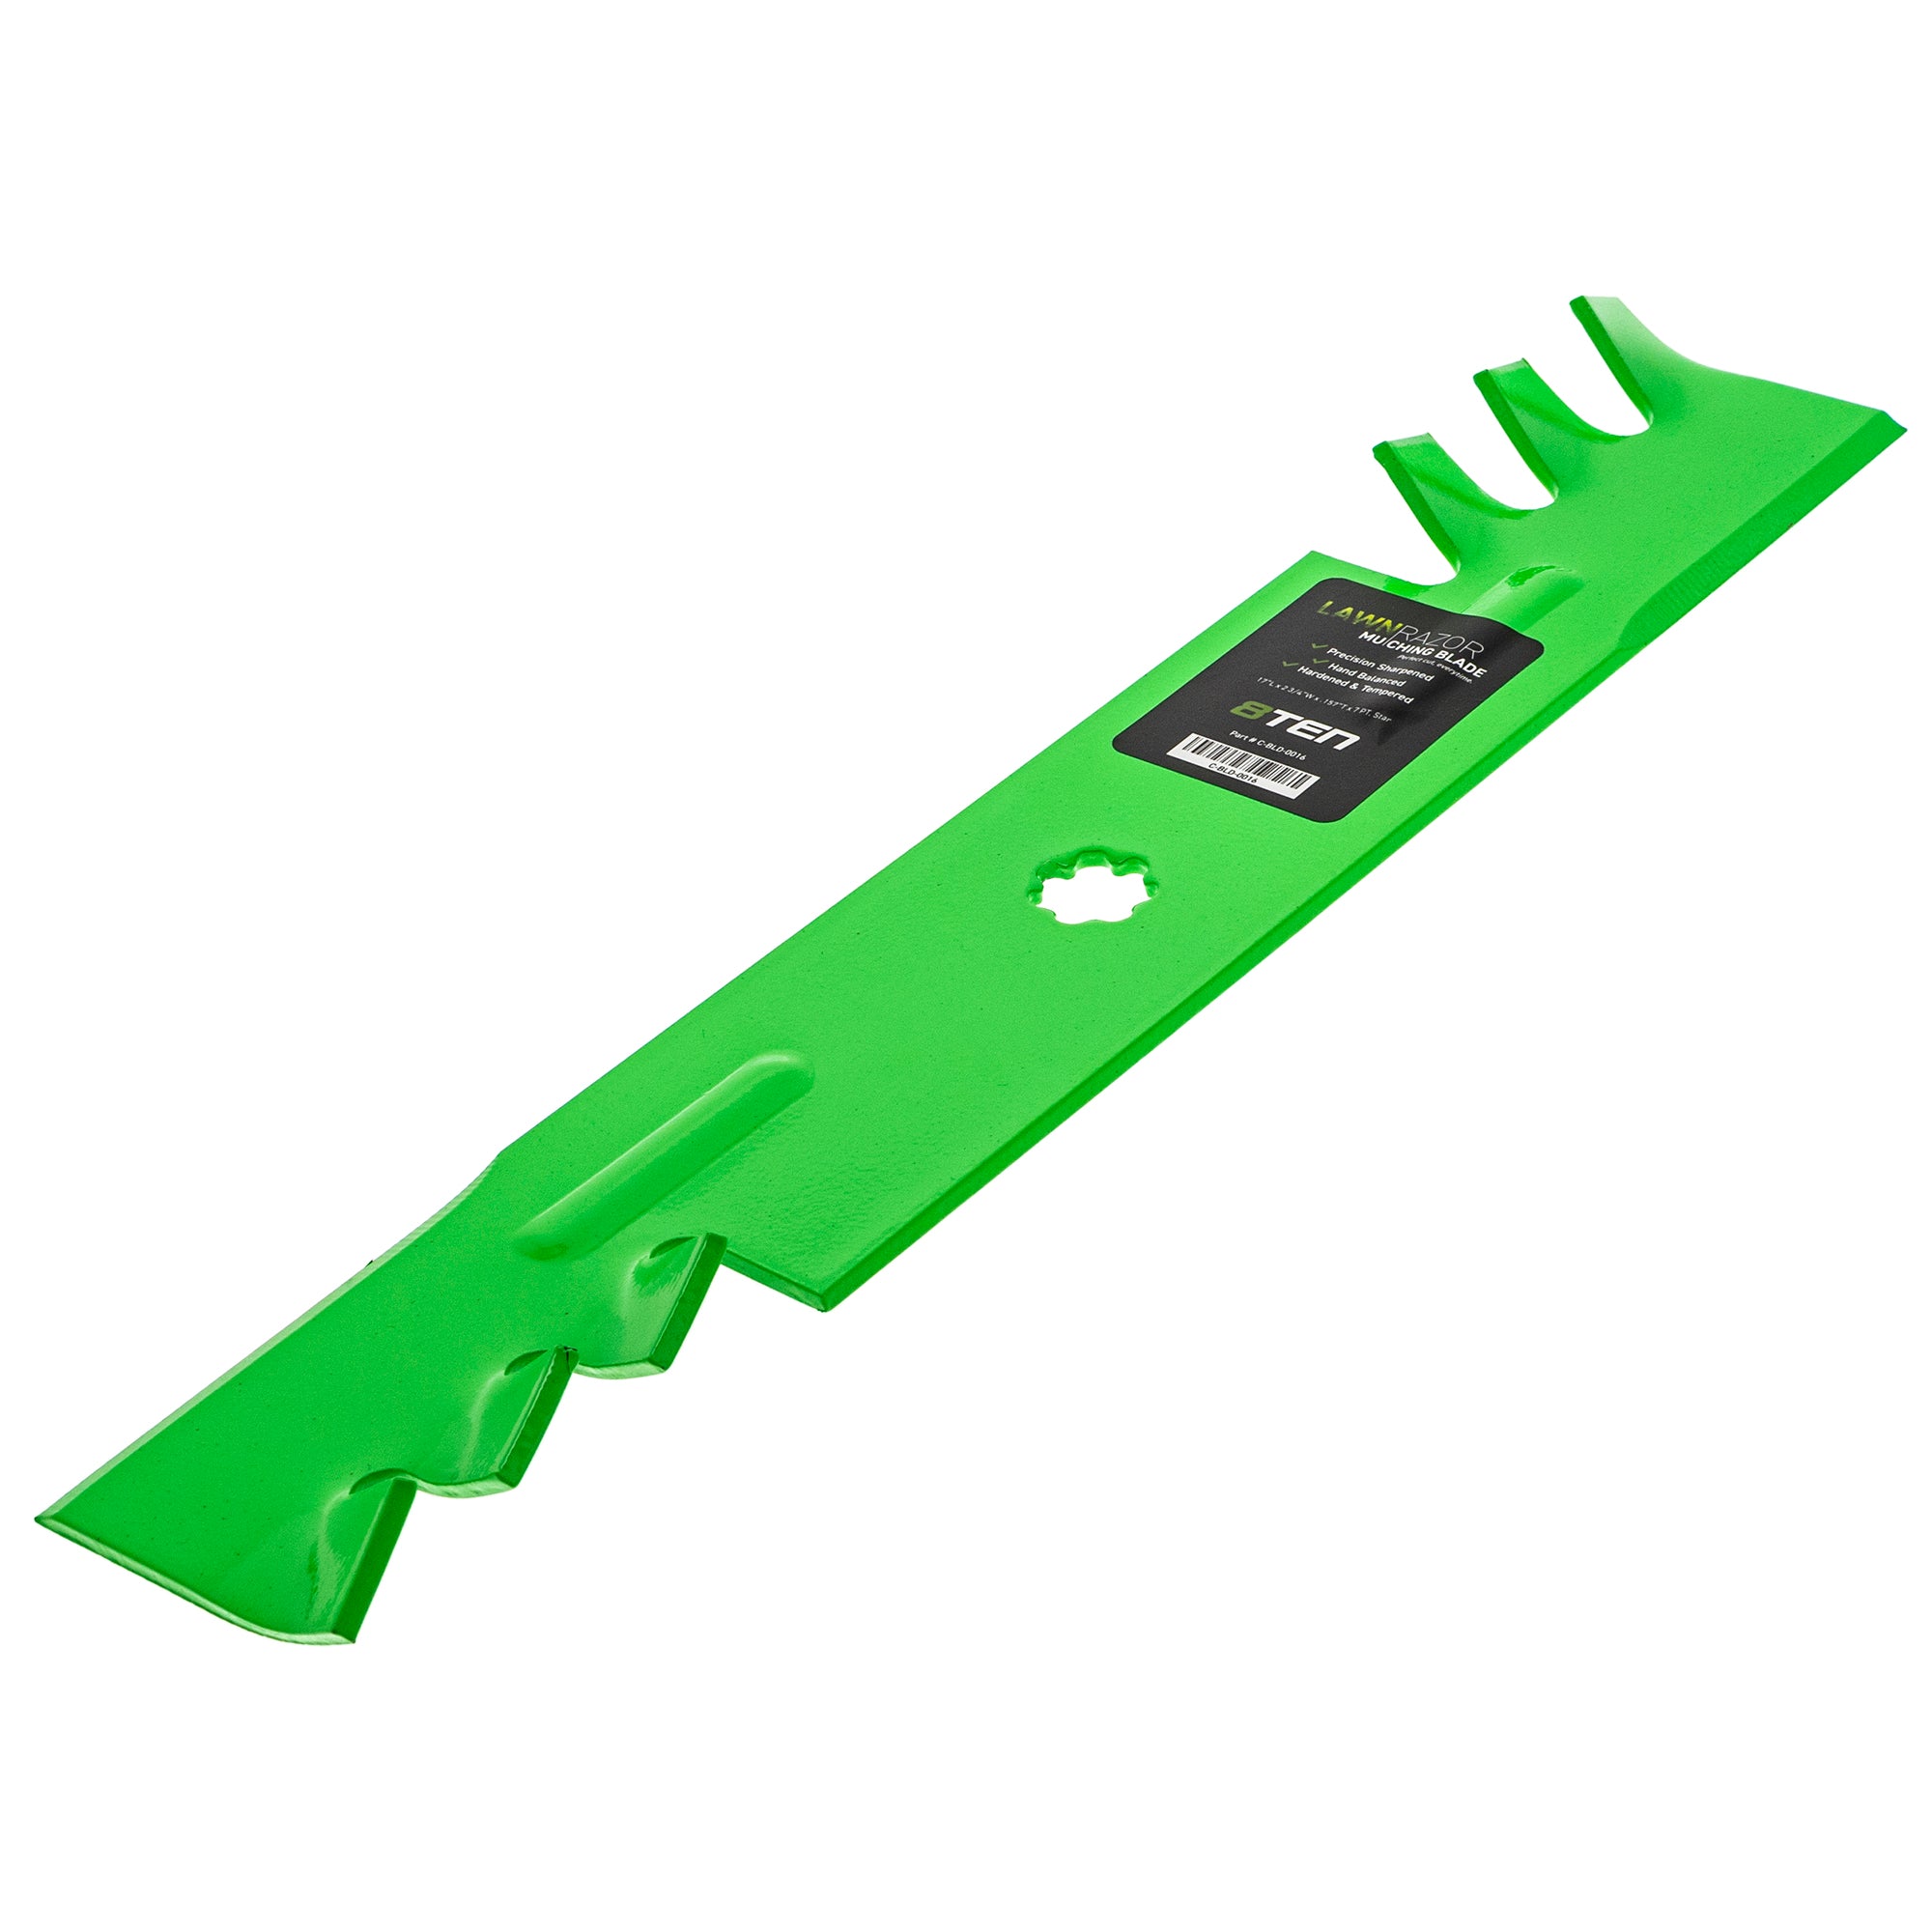 Deck Blade Spindle Kit for Combo John Deere LA 130 140 145 155C D140